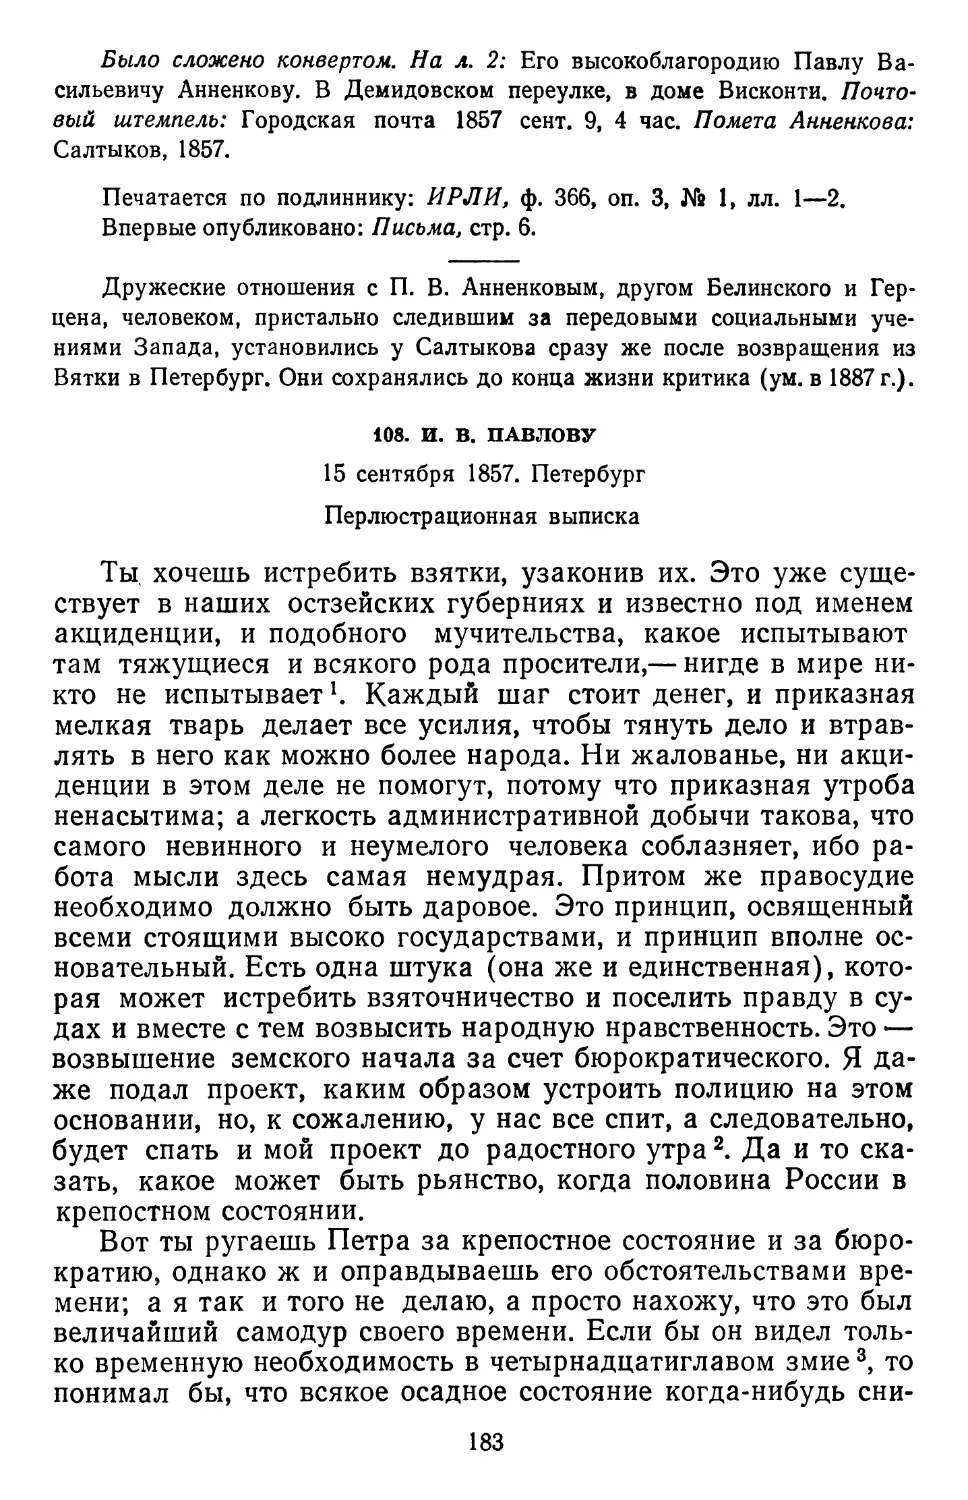 108.И.В. Павлову. 15 сентября 1857. Петербург